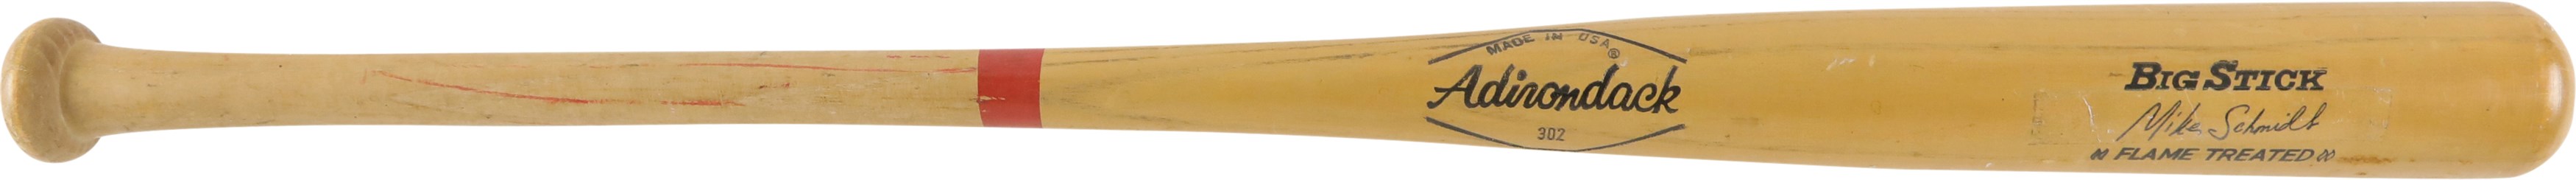 Baseball Equipment - 1971-1979 Mike Schmidt Philadelphia Phillies Game Issued Bat